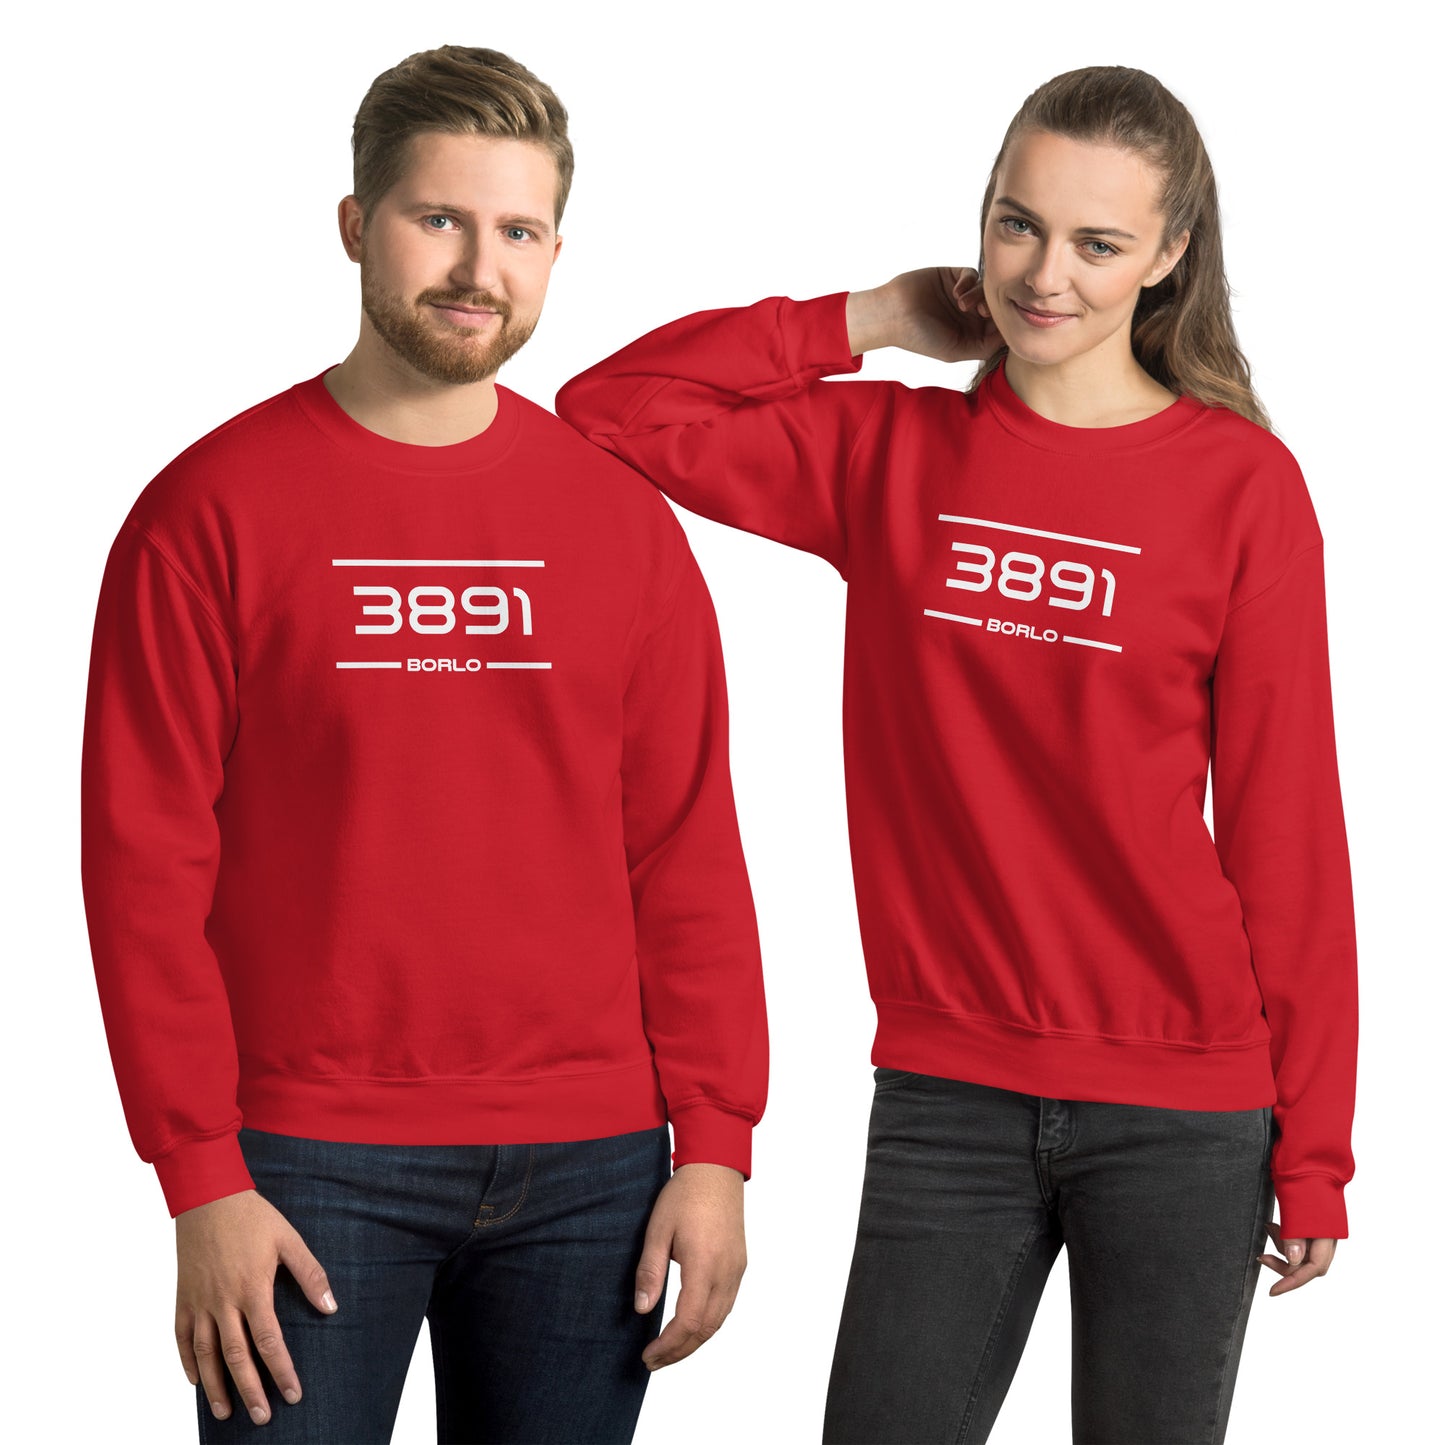 Sweater - 3891 - Borlo (M/V)